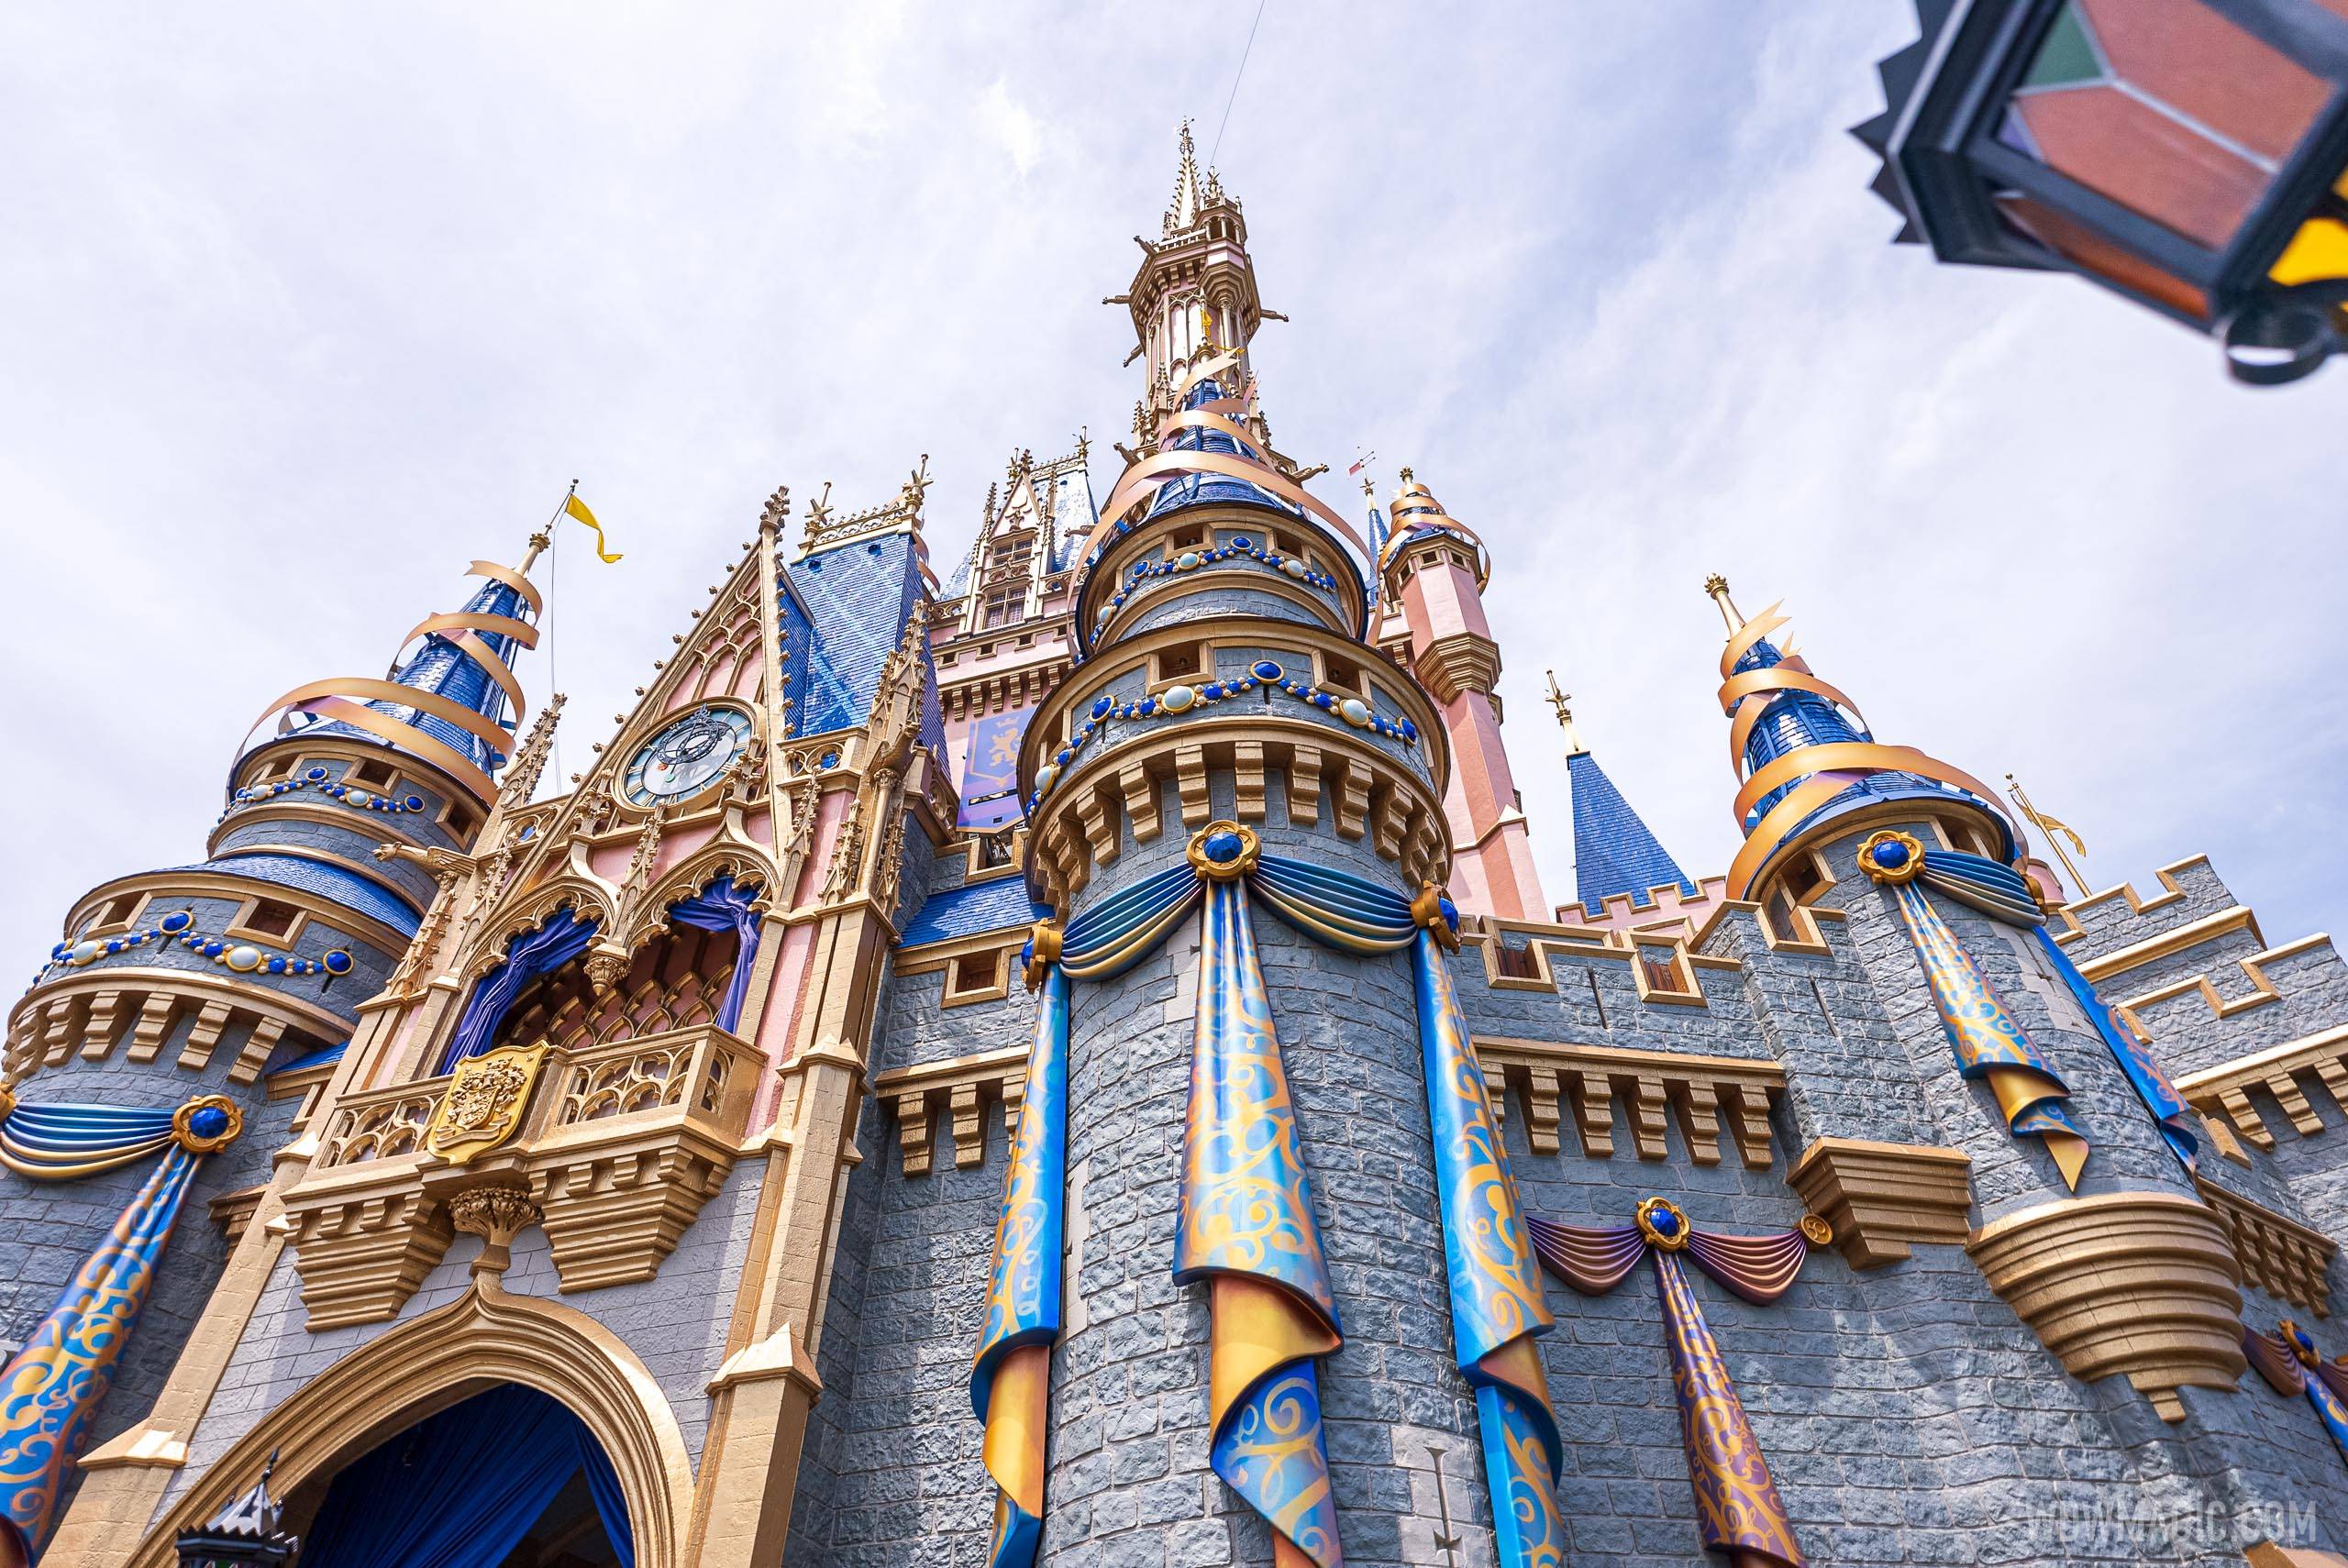 50th anniversary Cinderella Castle additions - April 15 2021